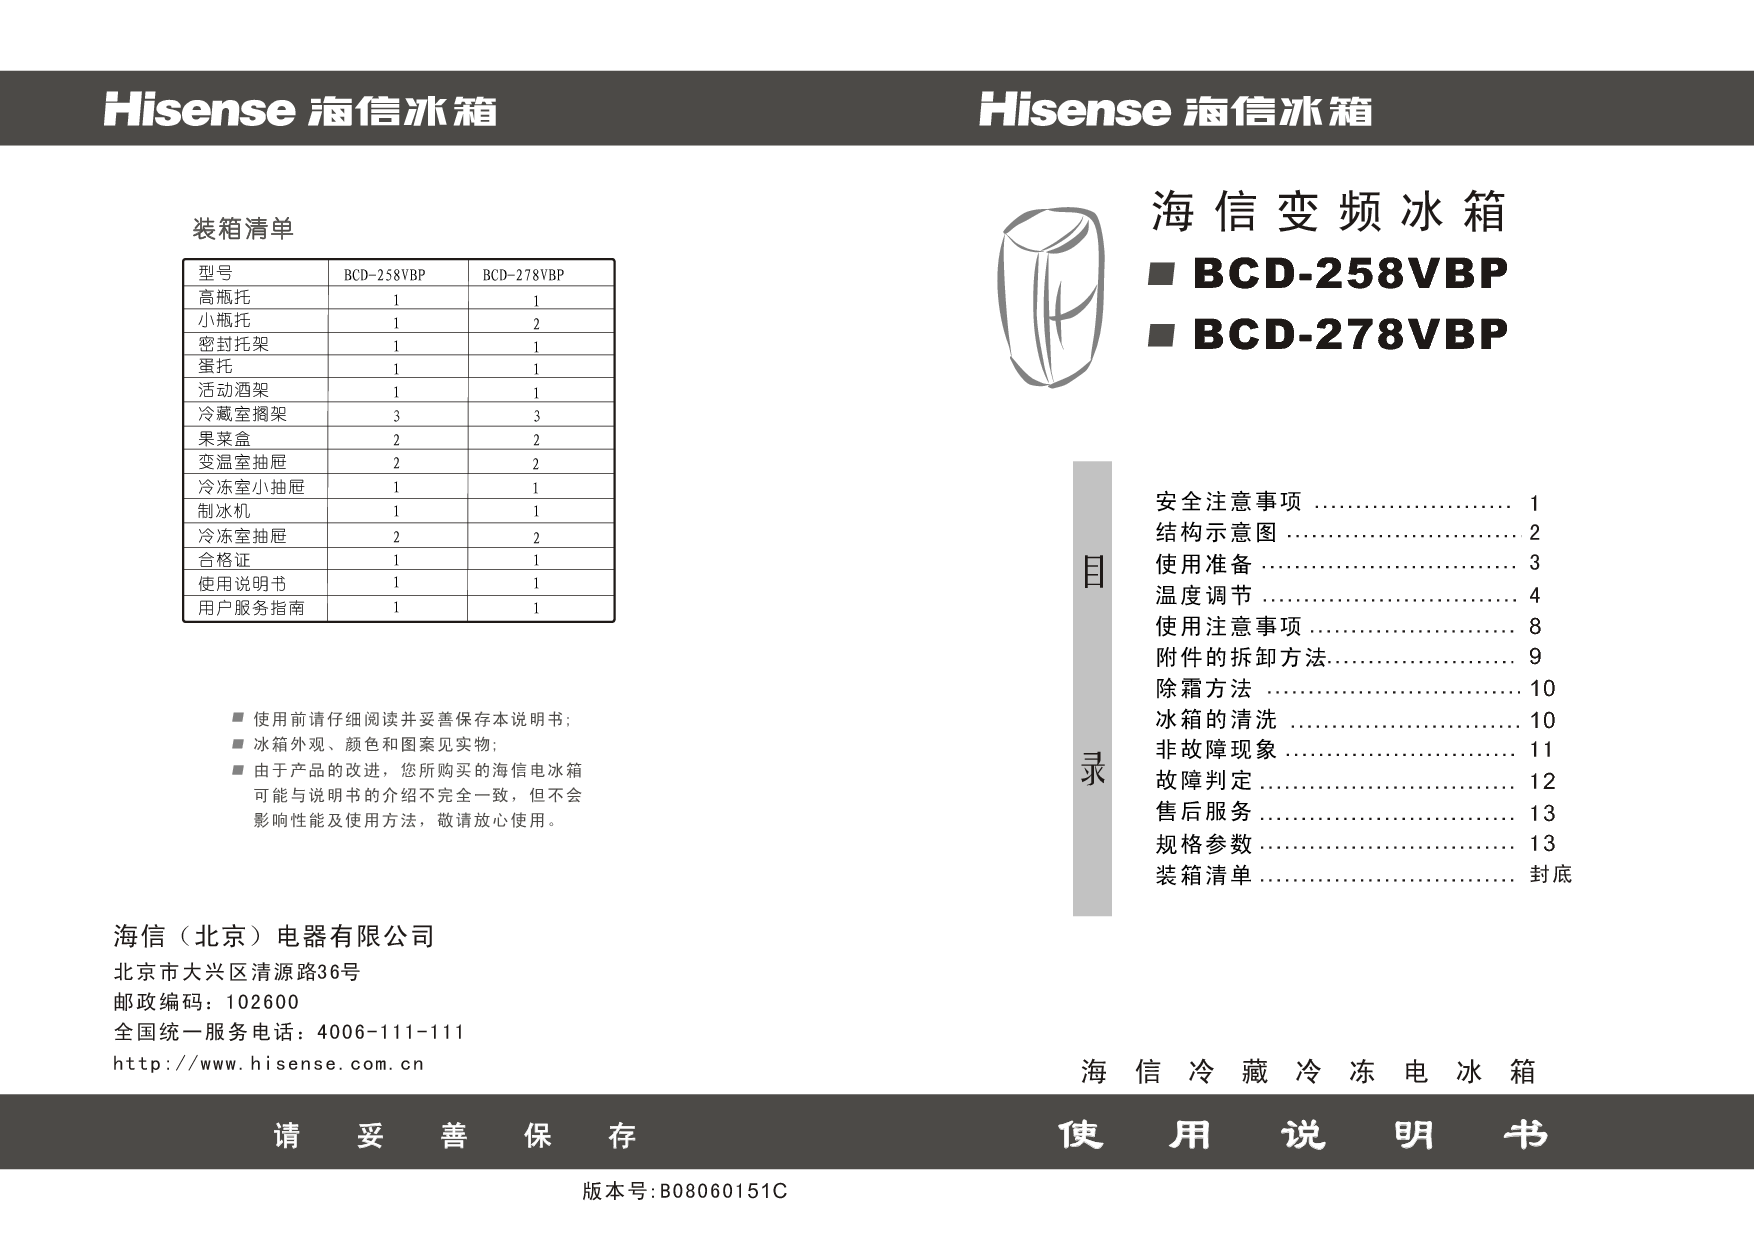 海信 Hisense BCD-258VBP 使用说明书 封面